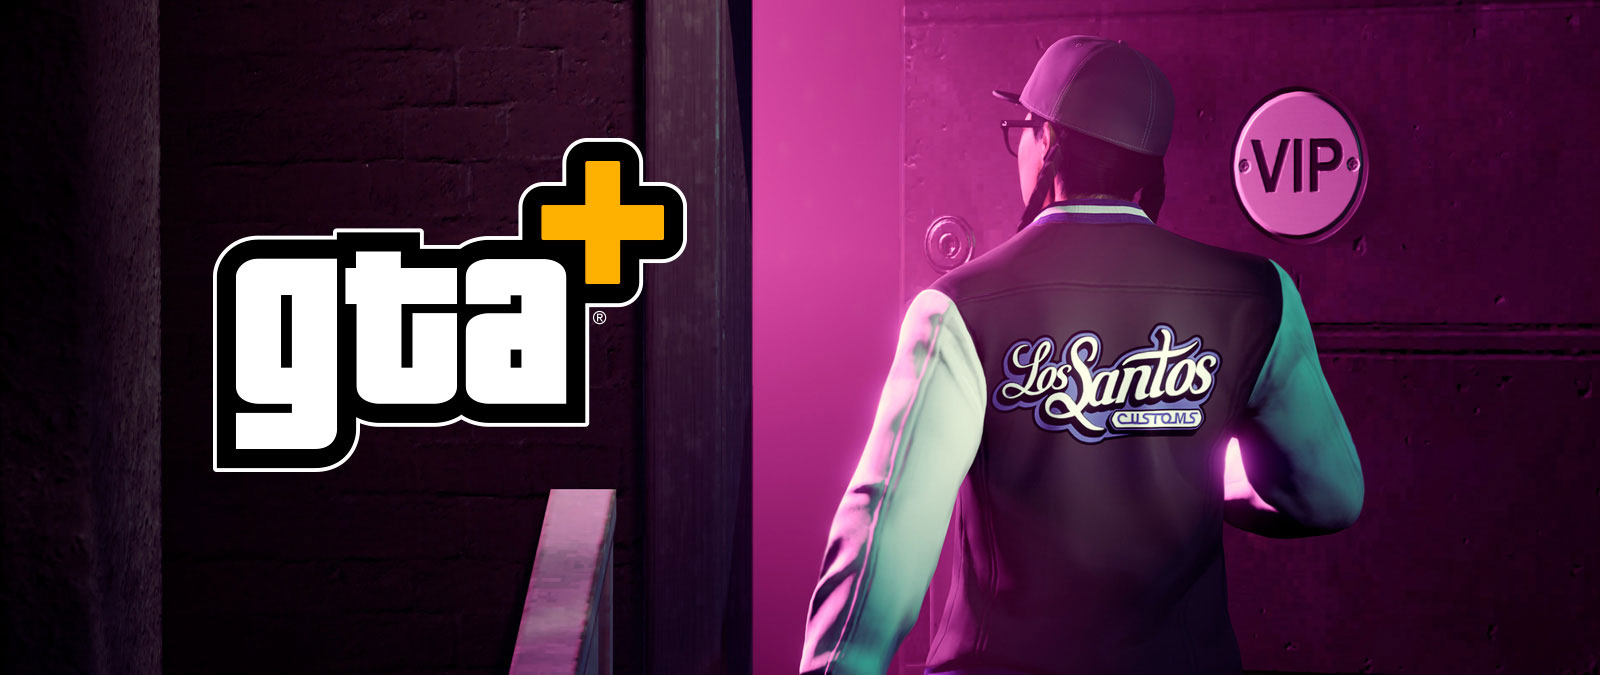 Logotipo de GTA+, Un personaje entra en una habitación VIP con una chaqueta de Los Santos Customs